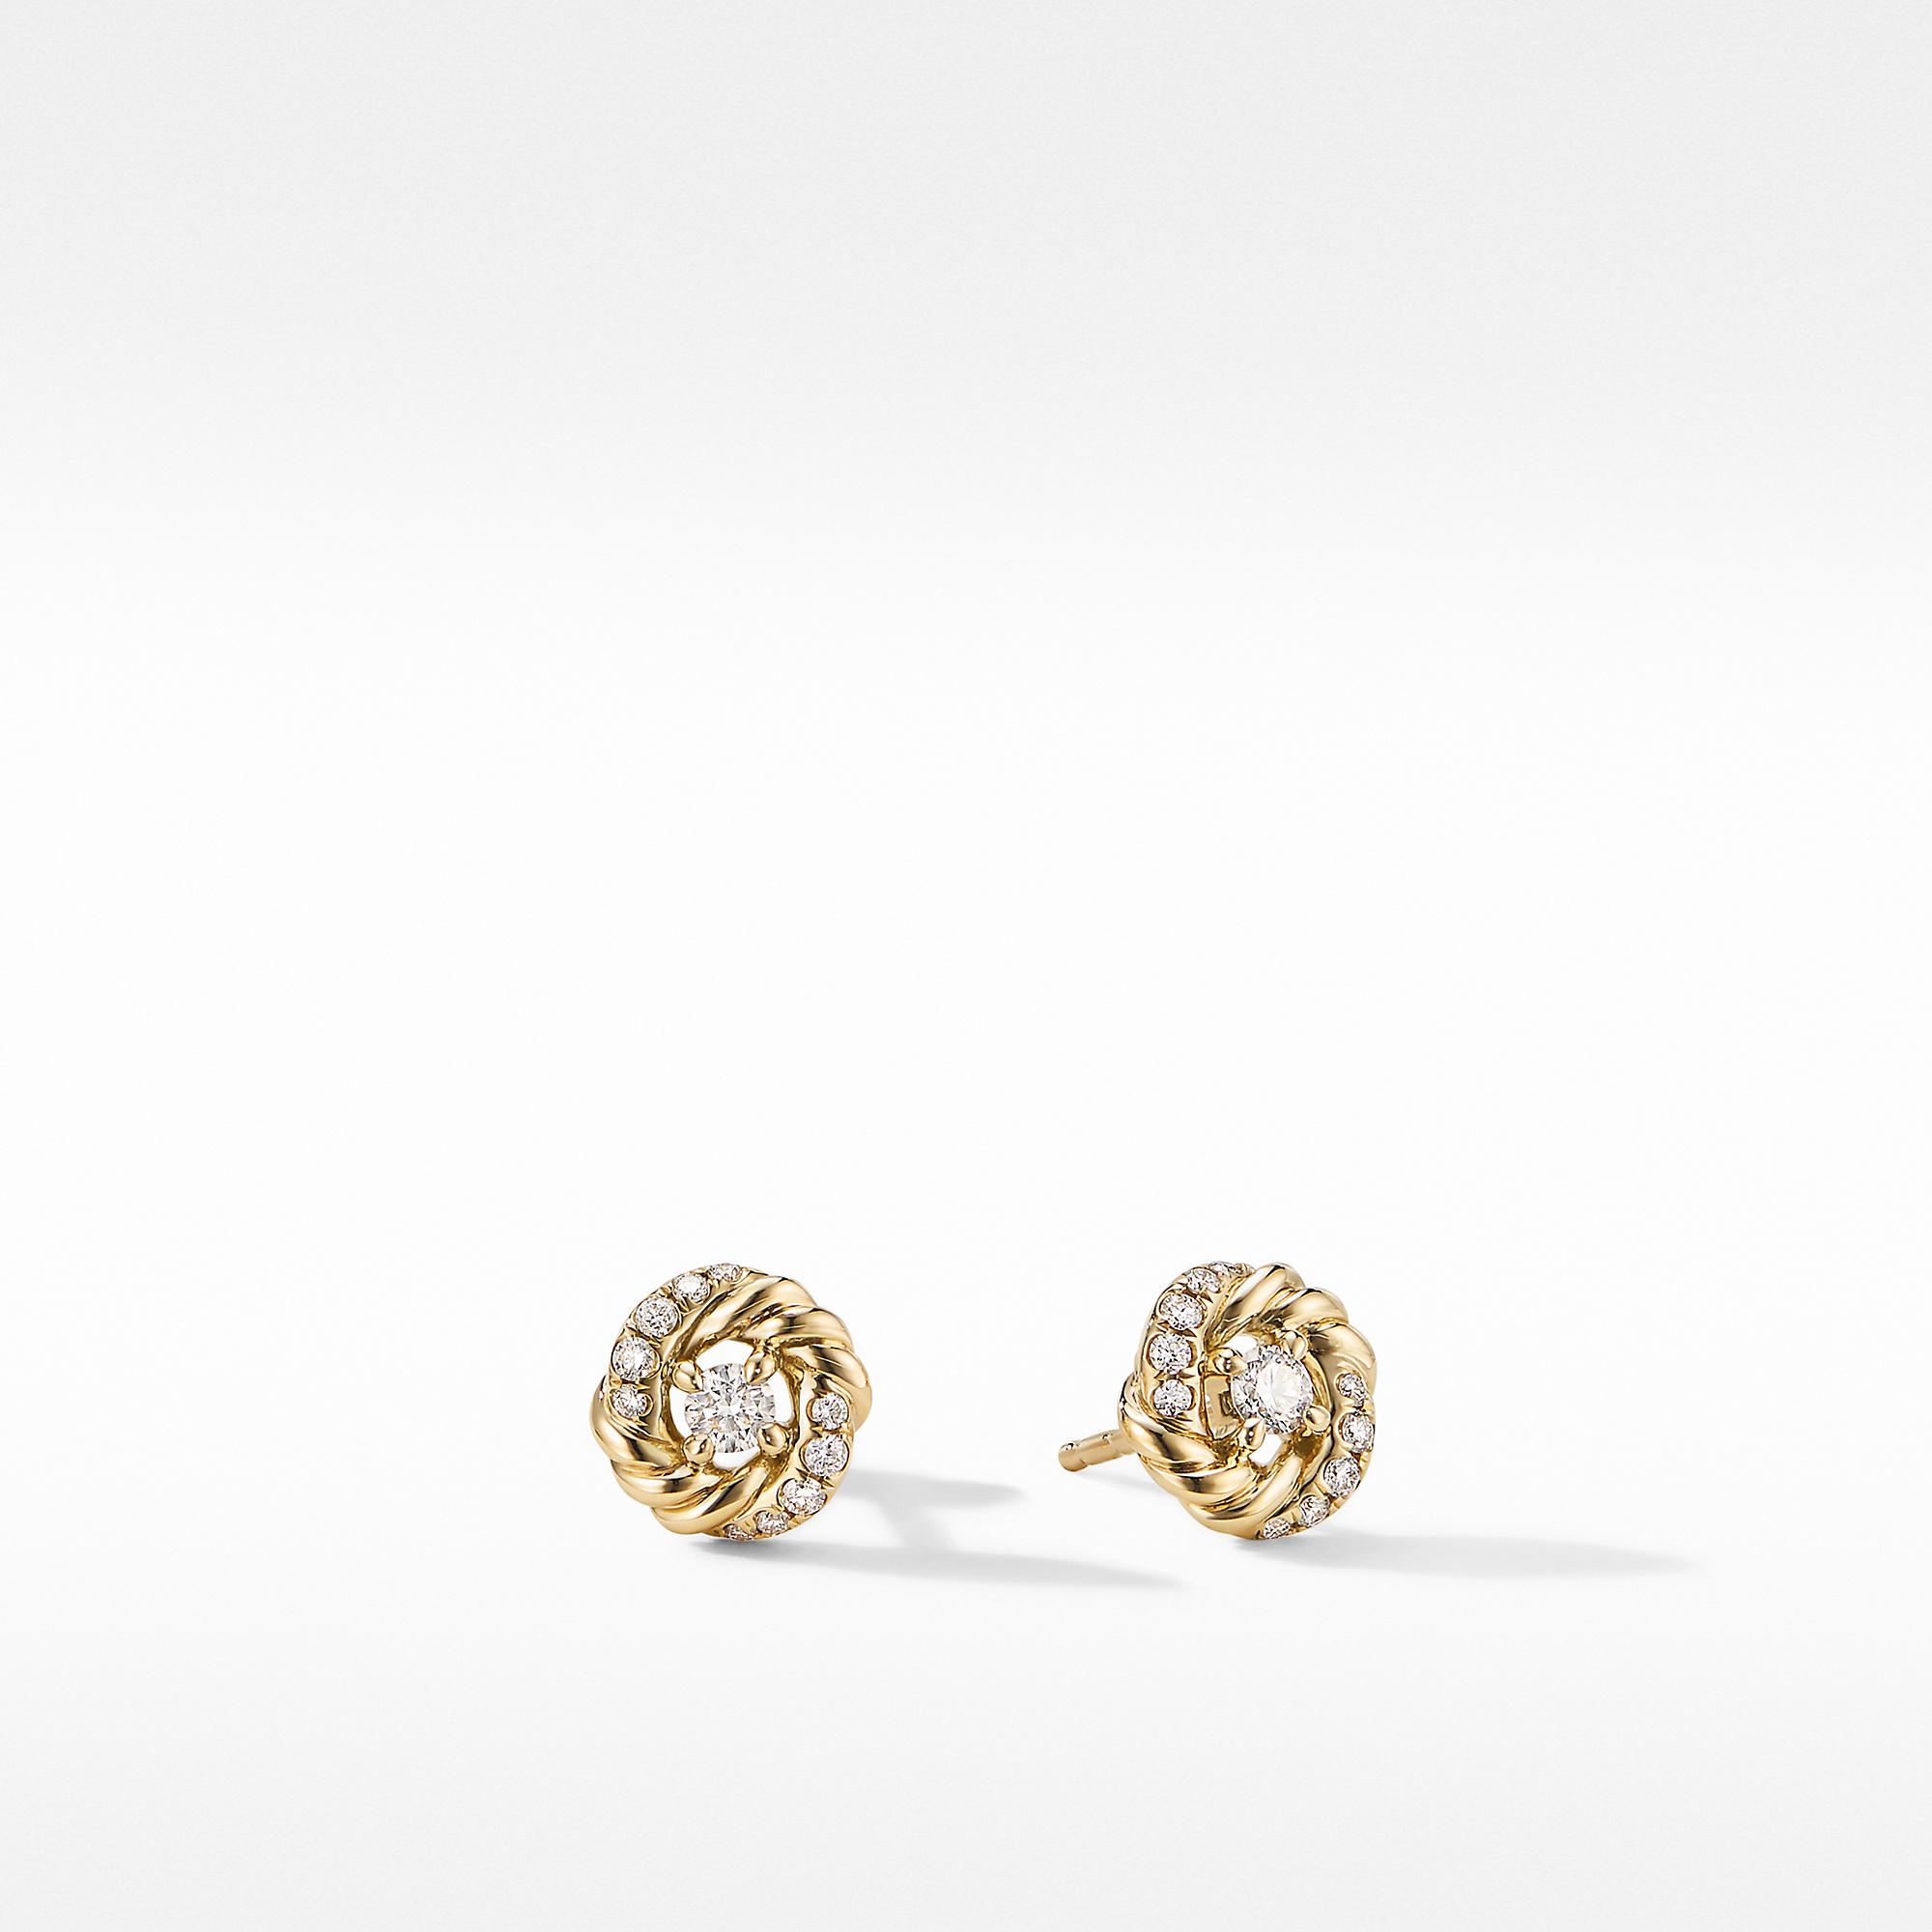 David Yurman Infinity Earrings with Diamonds in Gold